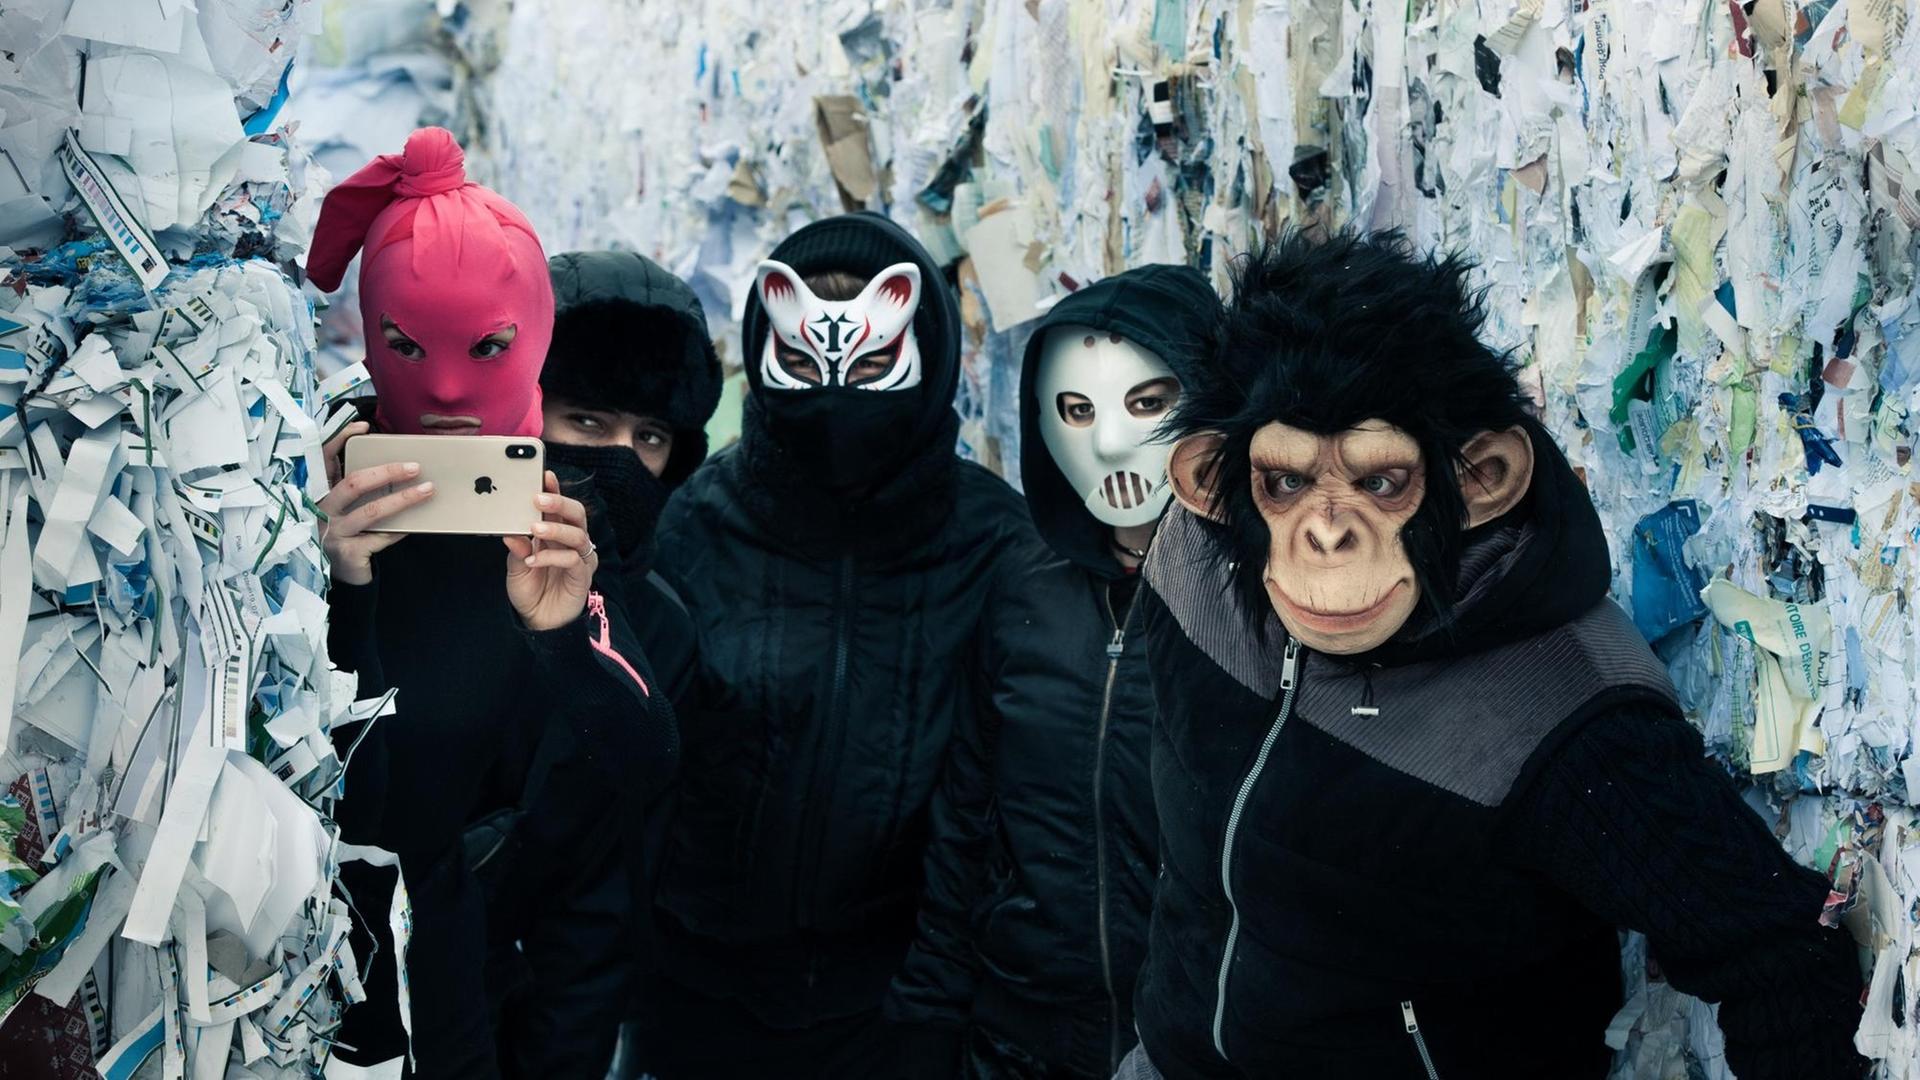 Fünf Jugendliche in dunklen Klamotten und mit Masken vor den Gesichtern.